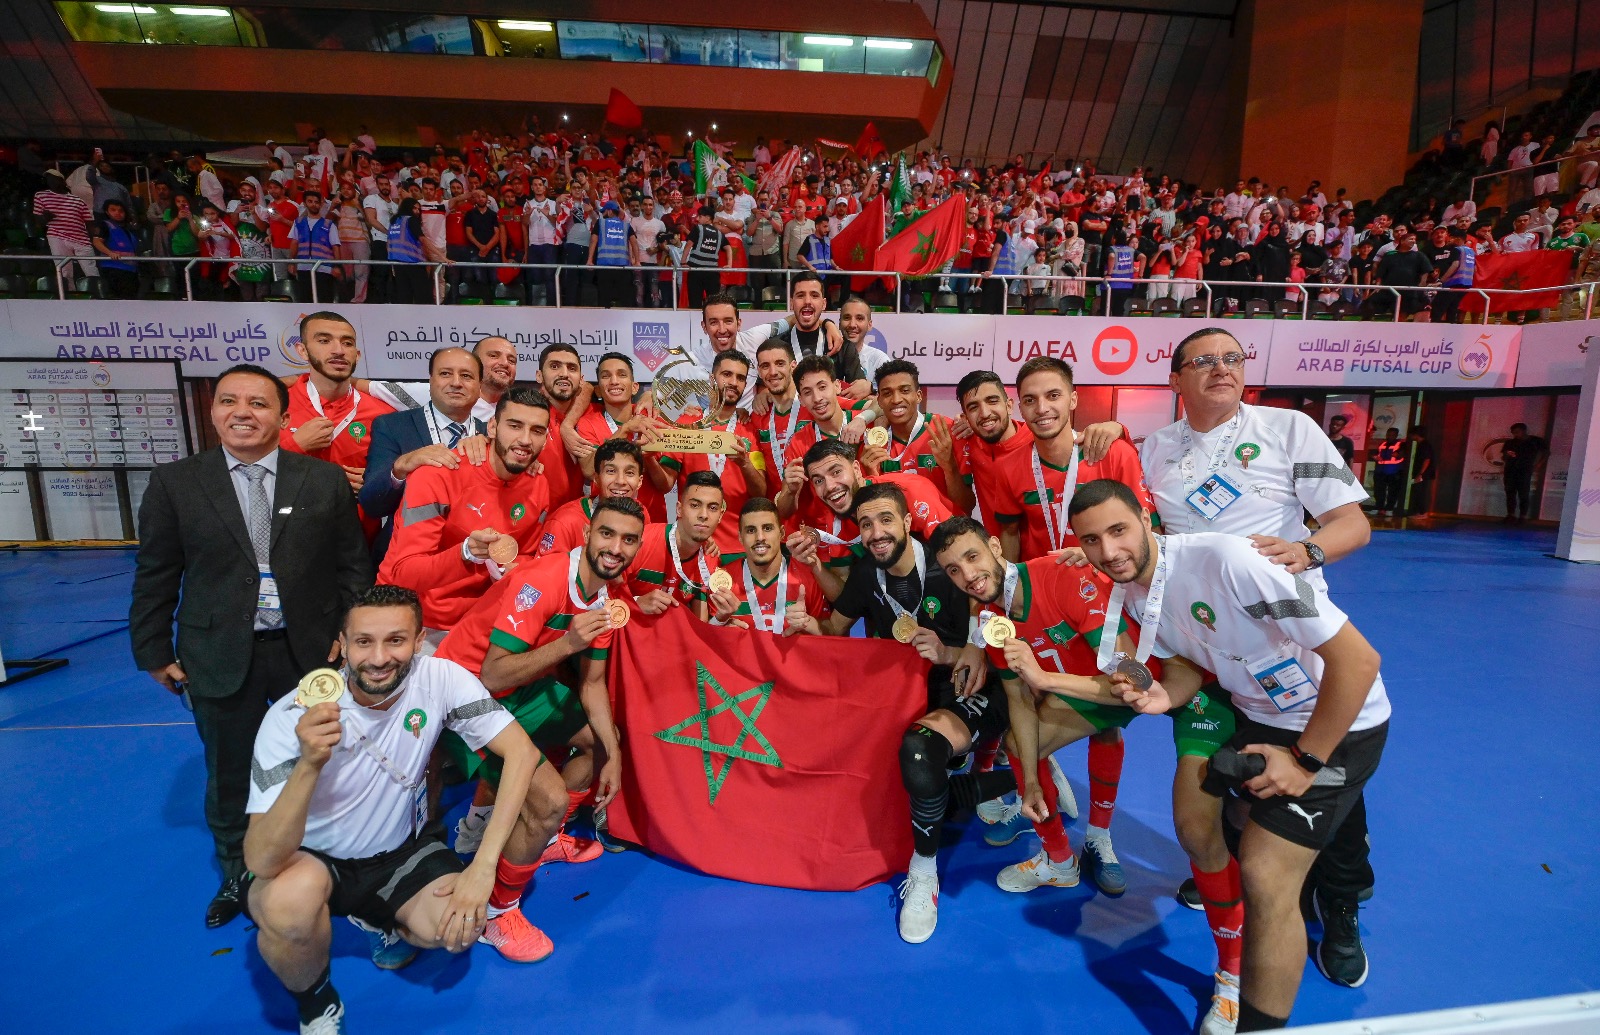 برقية تهنئة من جلالة الملك إلى أعضاء المنتخب الوطني المغربي لكرة القدم داخل القاعة بمناسبة فوزه بكأس العرب